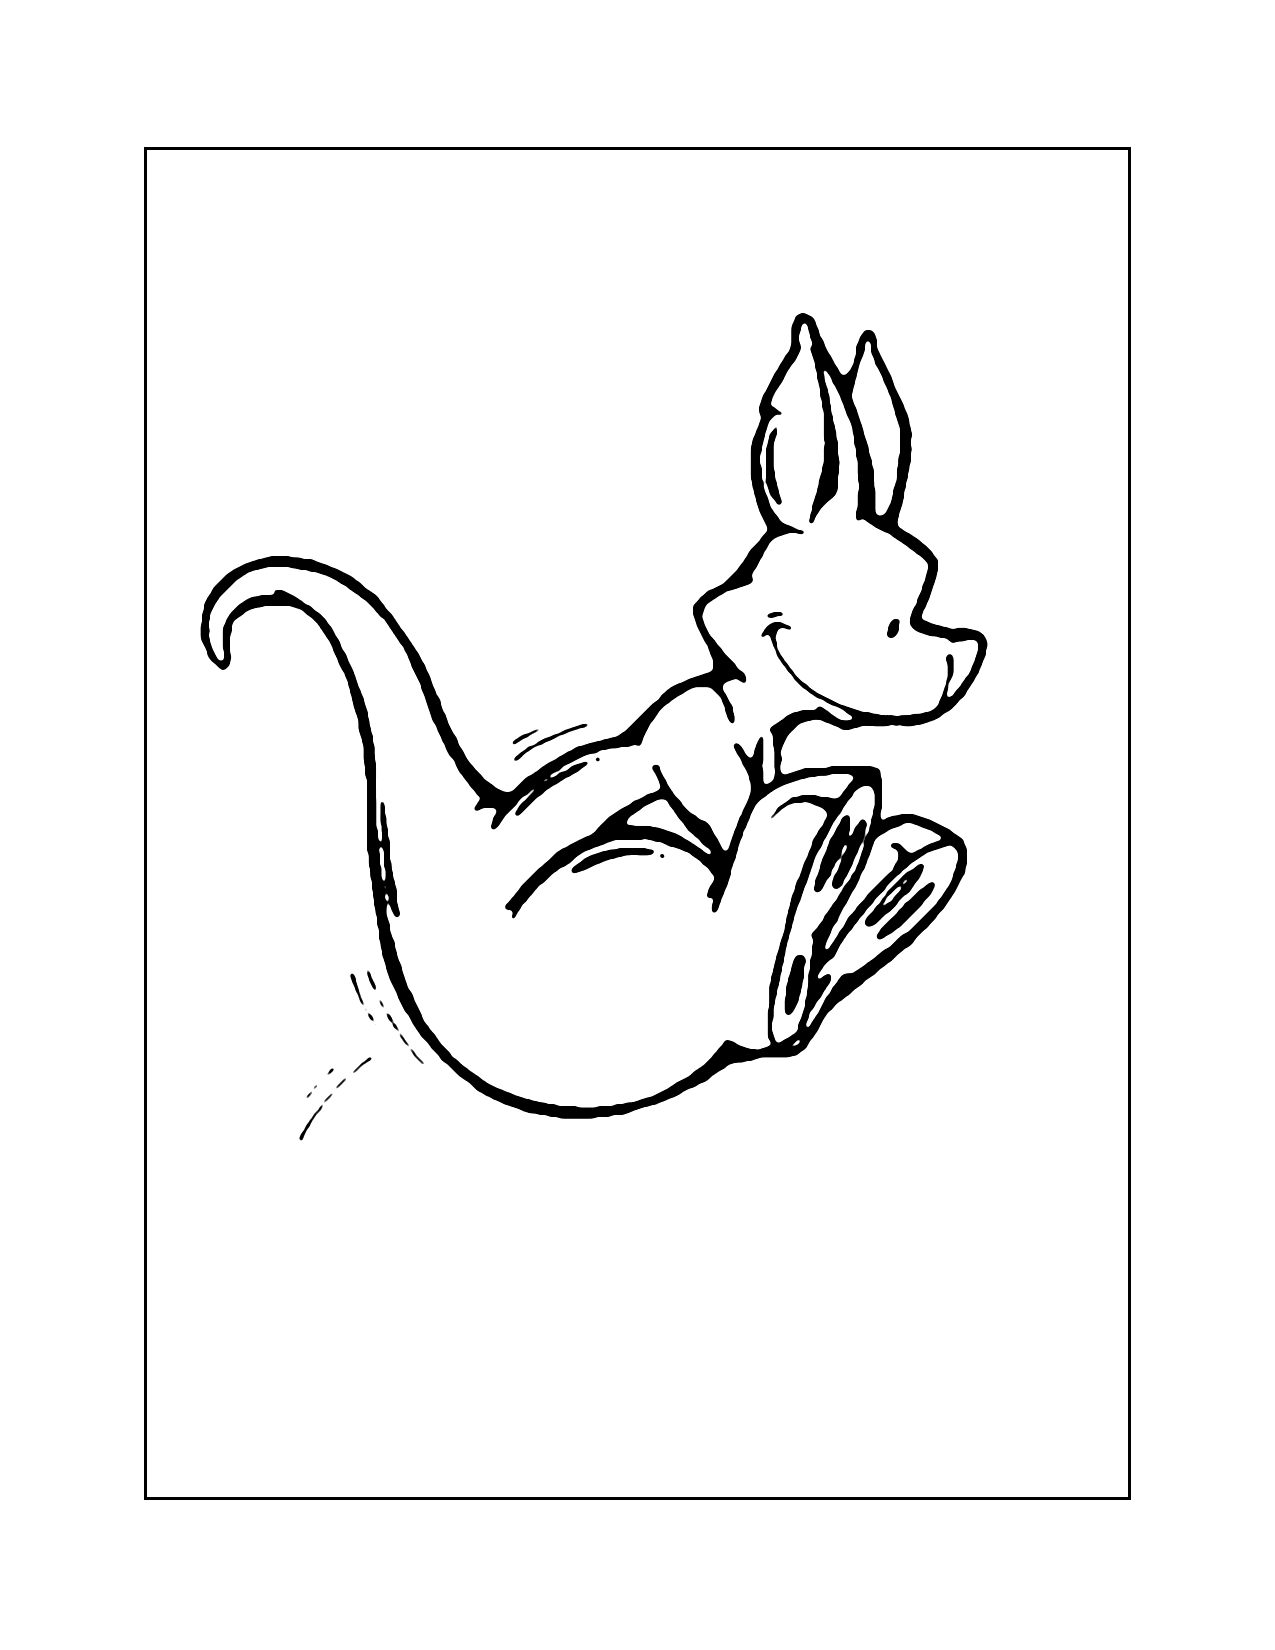 Cute Hopping Kangaroo Coloring Page